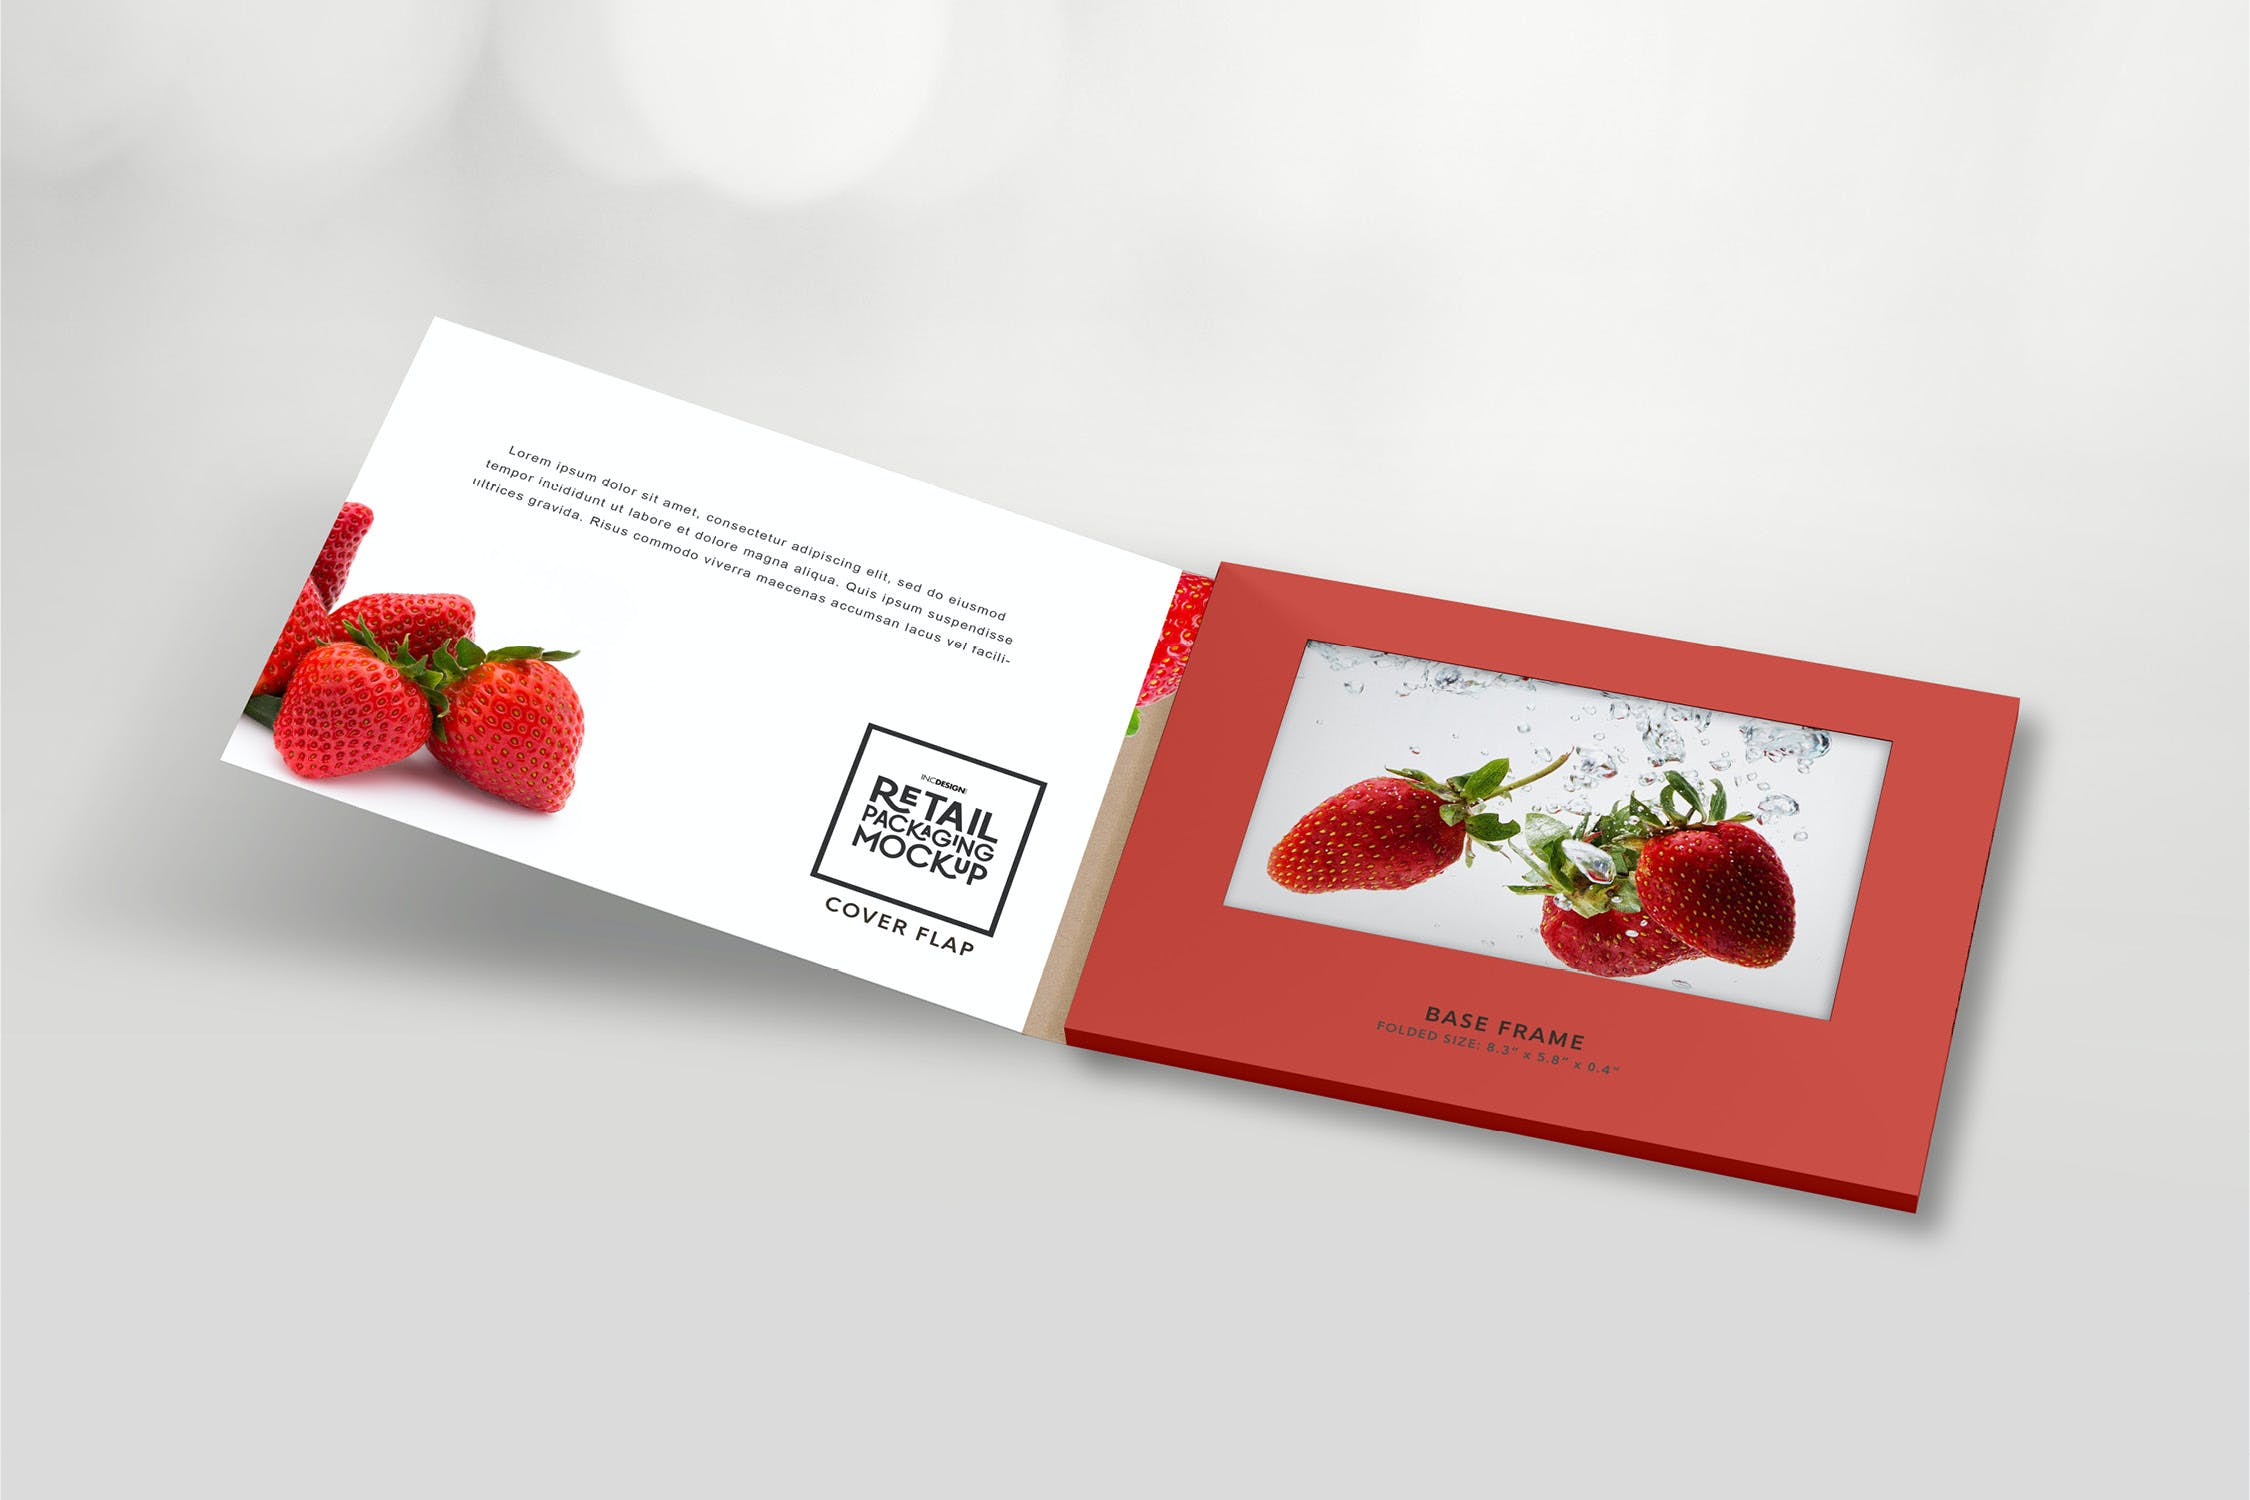 包装设计零售光盘包装手册样机 Retail Video Wrap Brochure Packaging Mockup设计素材模板